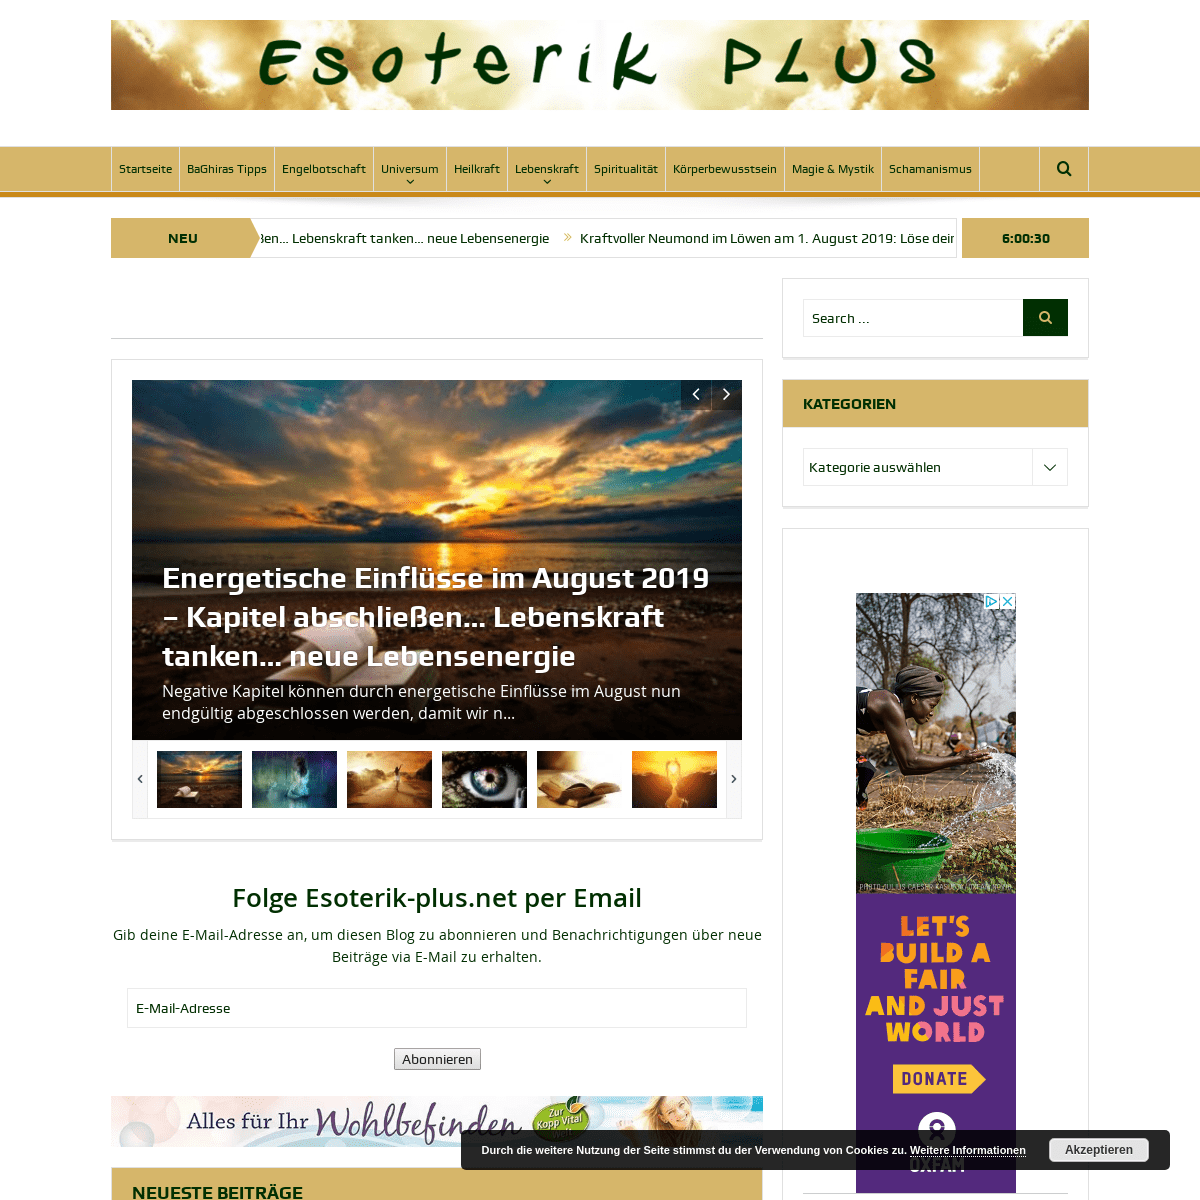 Esoterik-plus.net - Licht und Liebe